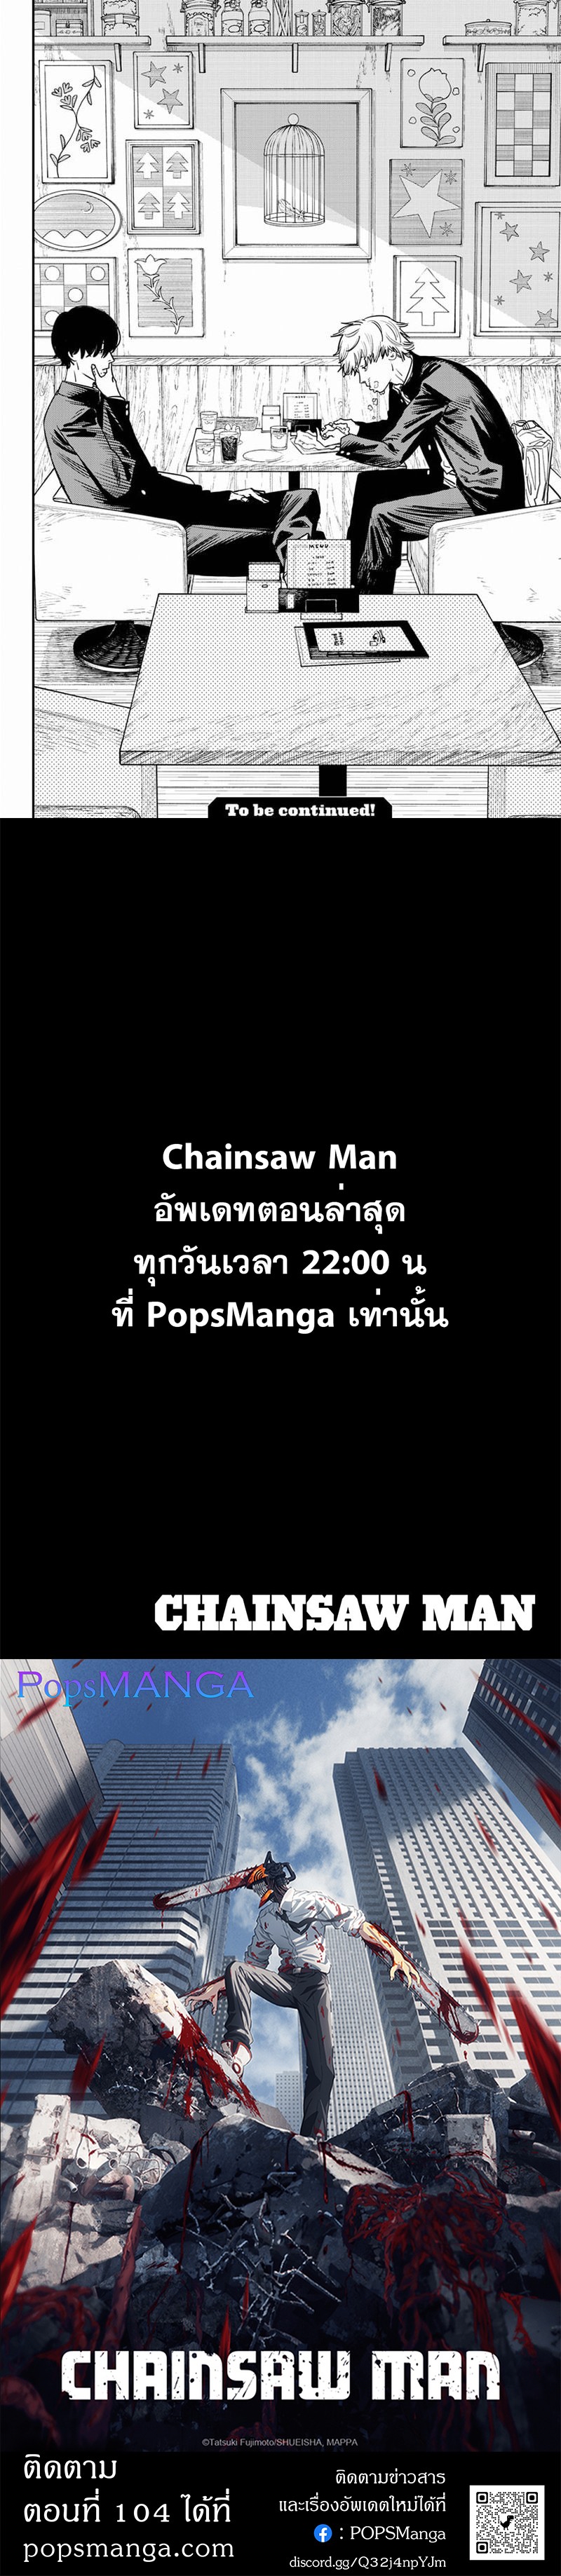 Chainsaw Man 103 6